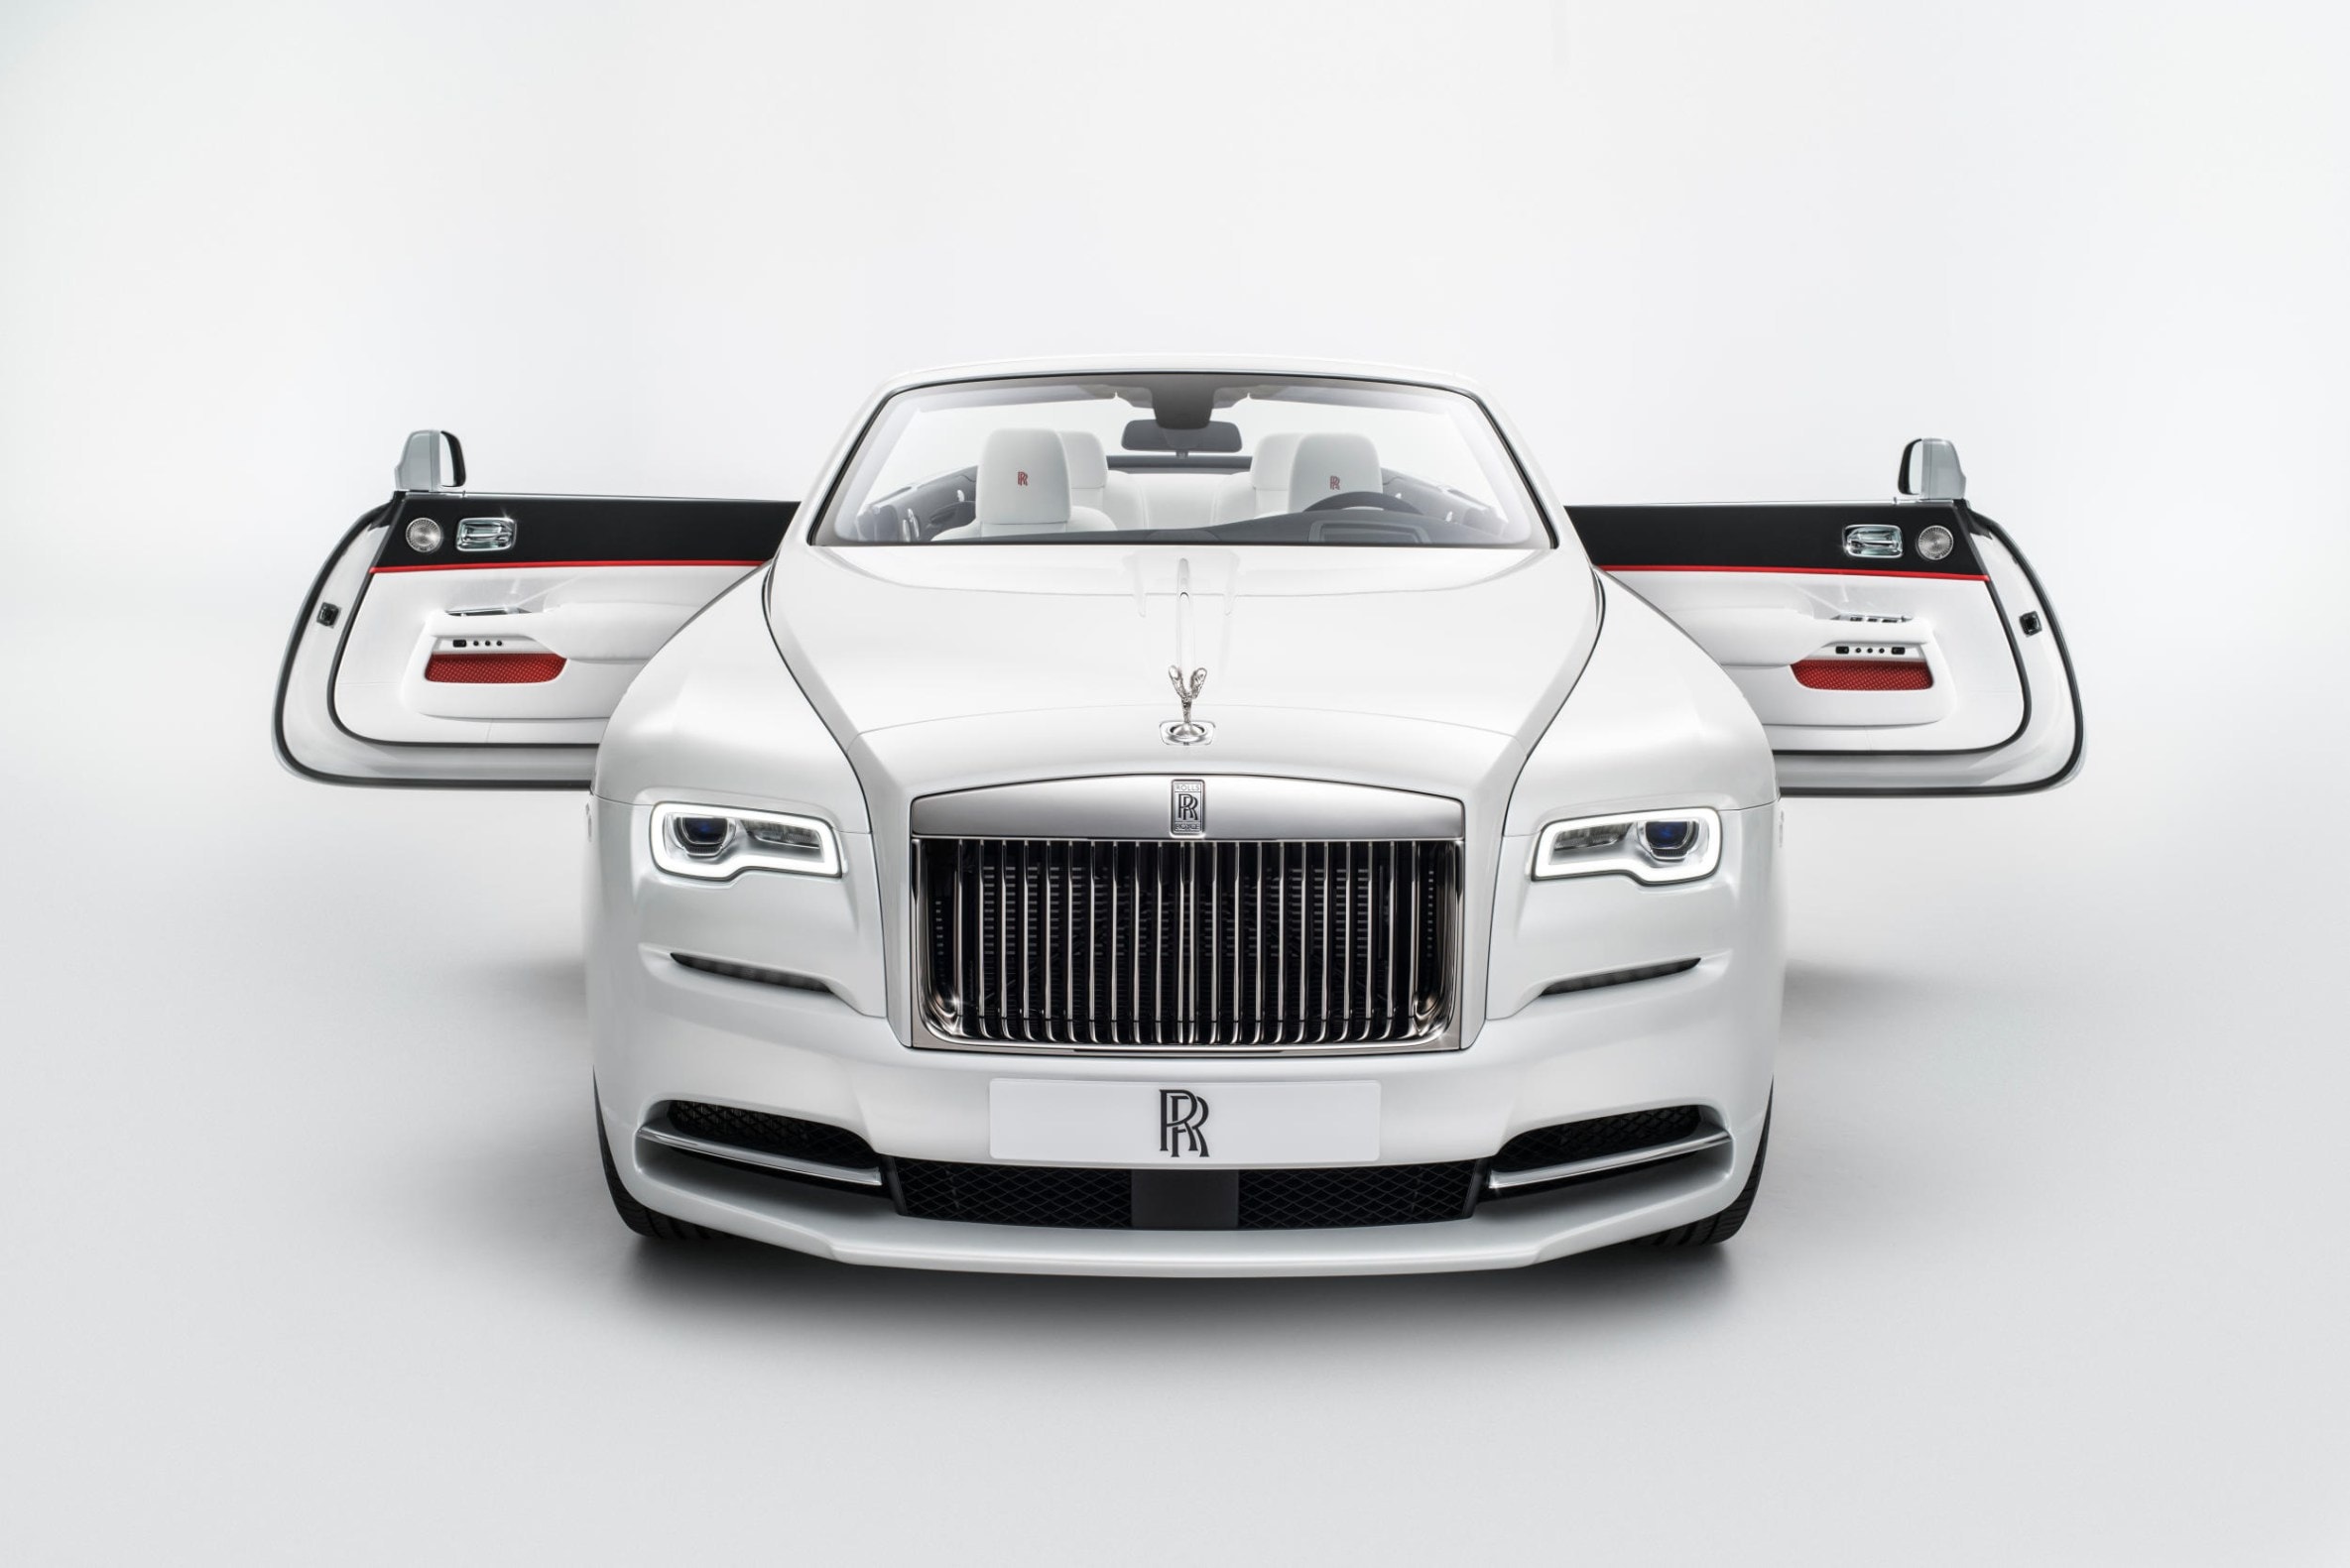 2017 Rolls-Royce Dawn — Inspired by Fashion